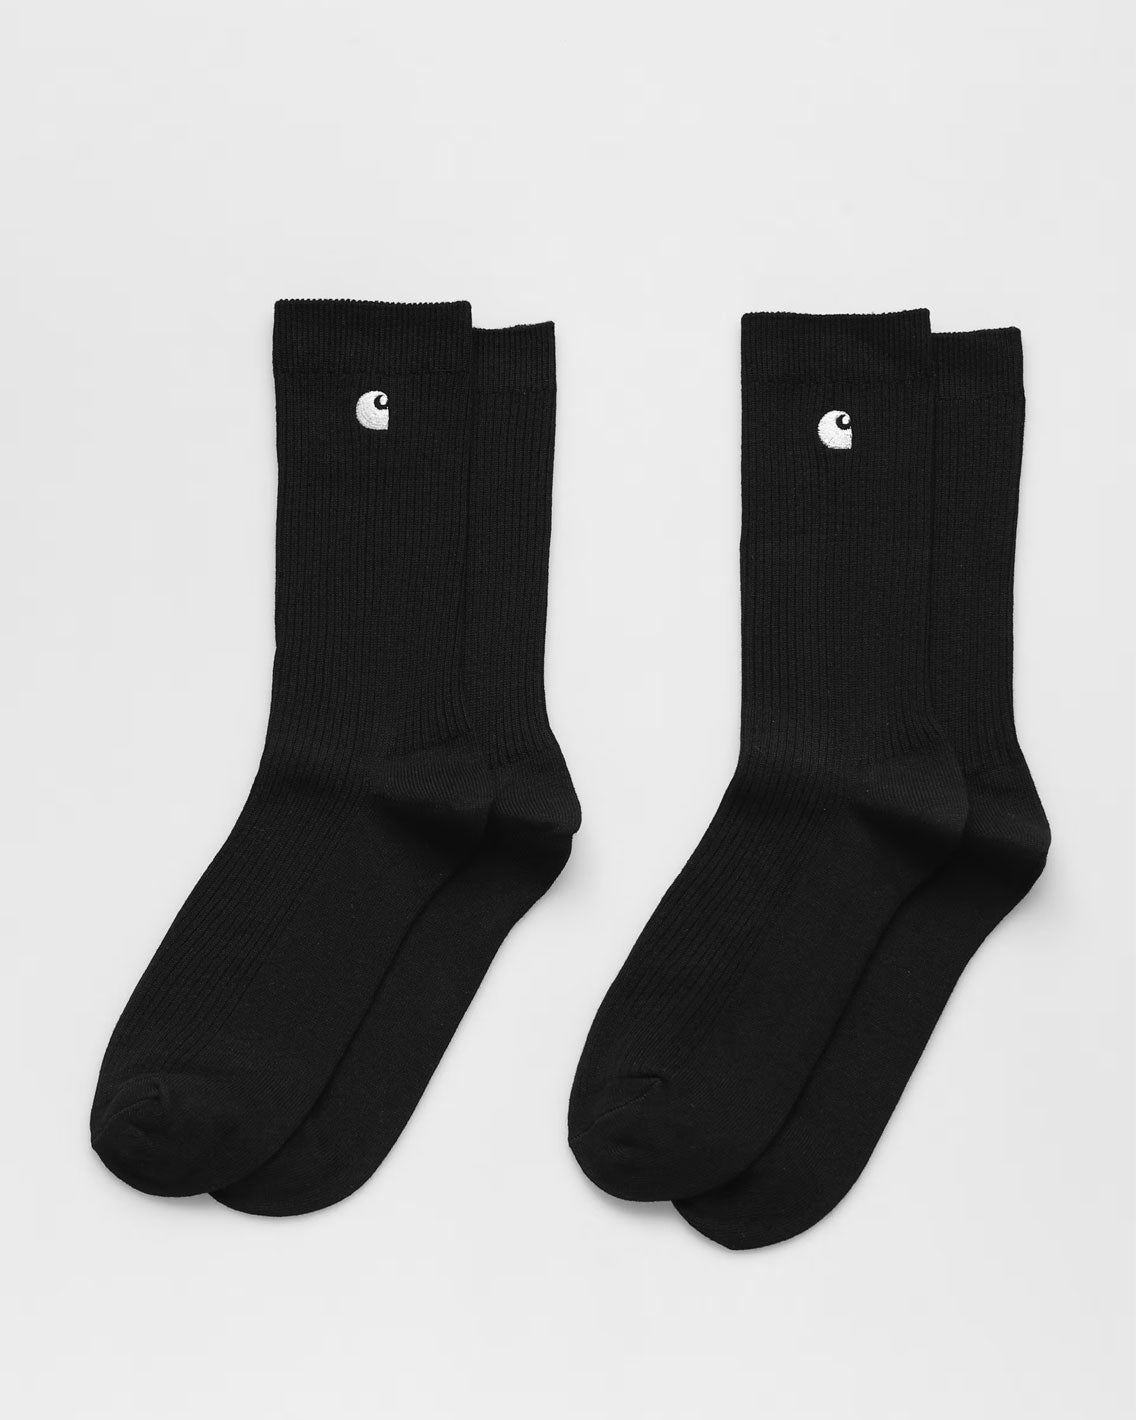 Carhartt - Madison Pack Socks - Black / White